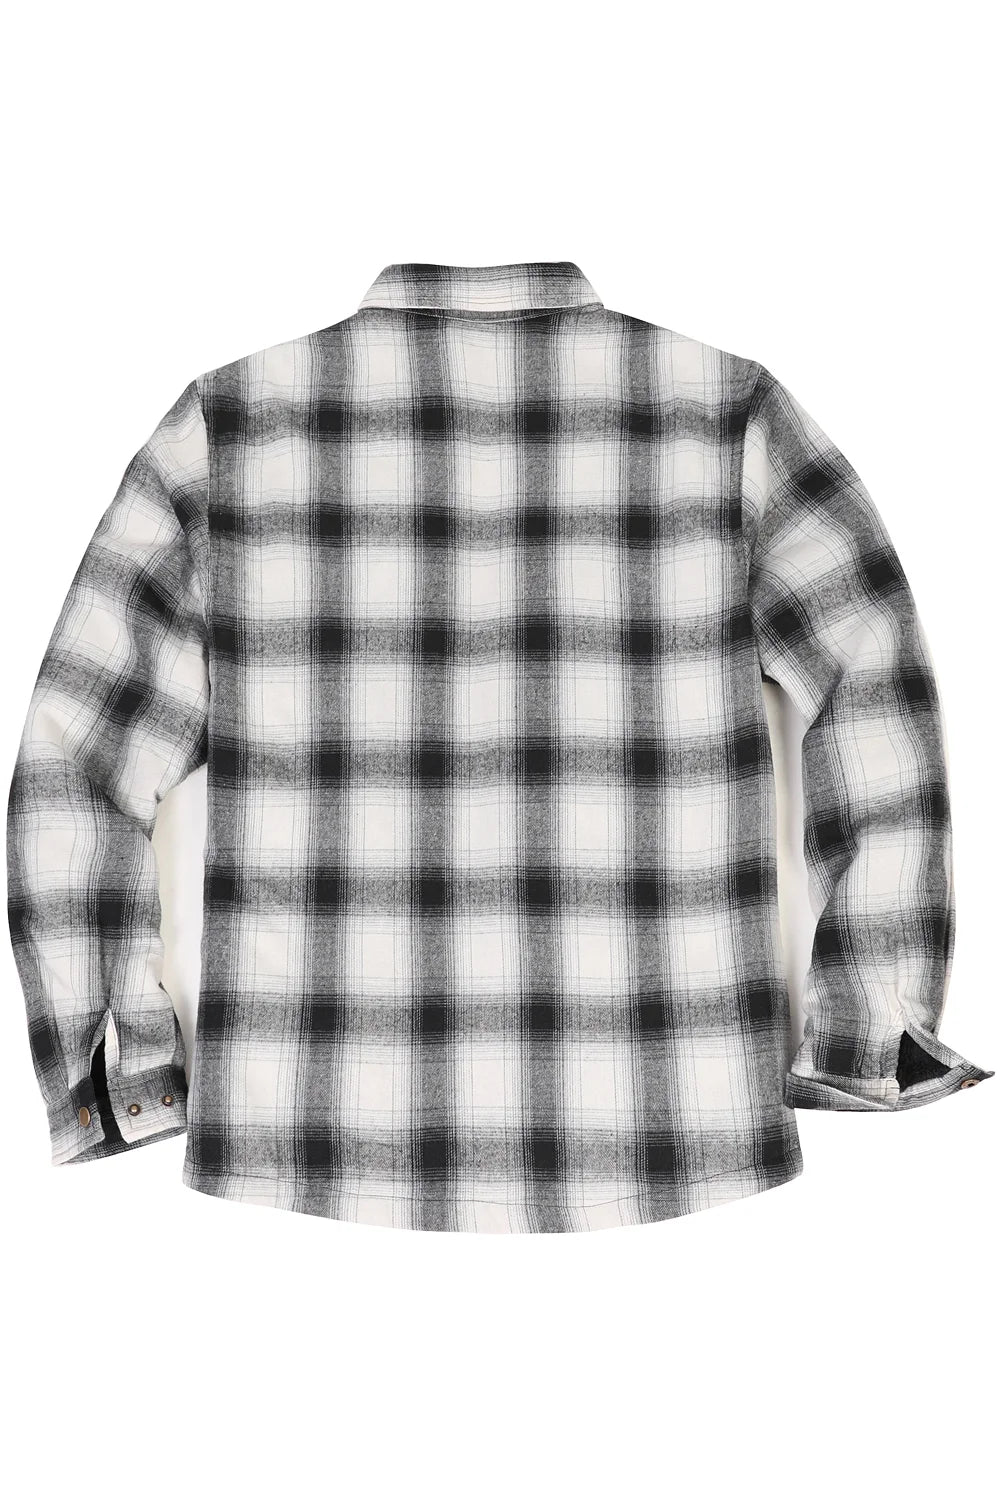 FlannelGo| Premium Outdoor Flannel Shirt Jackets & Accessories